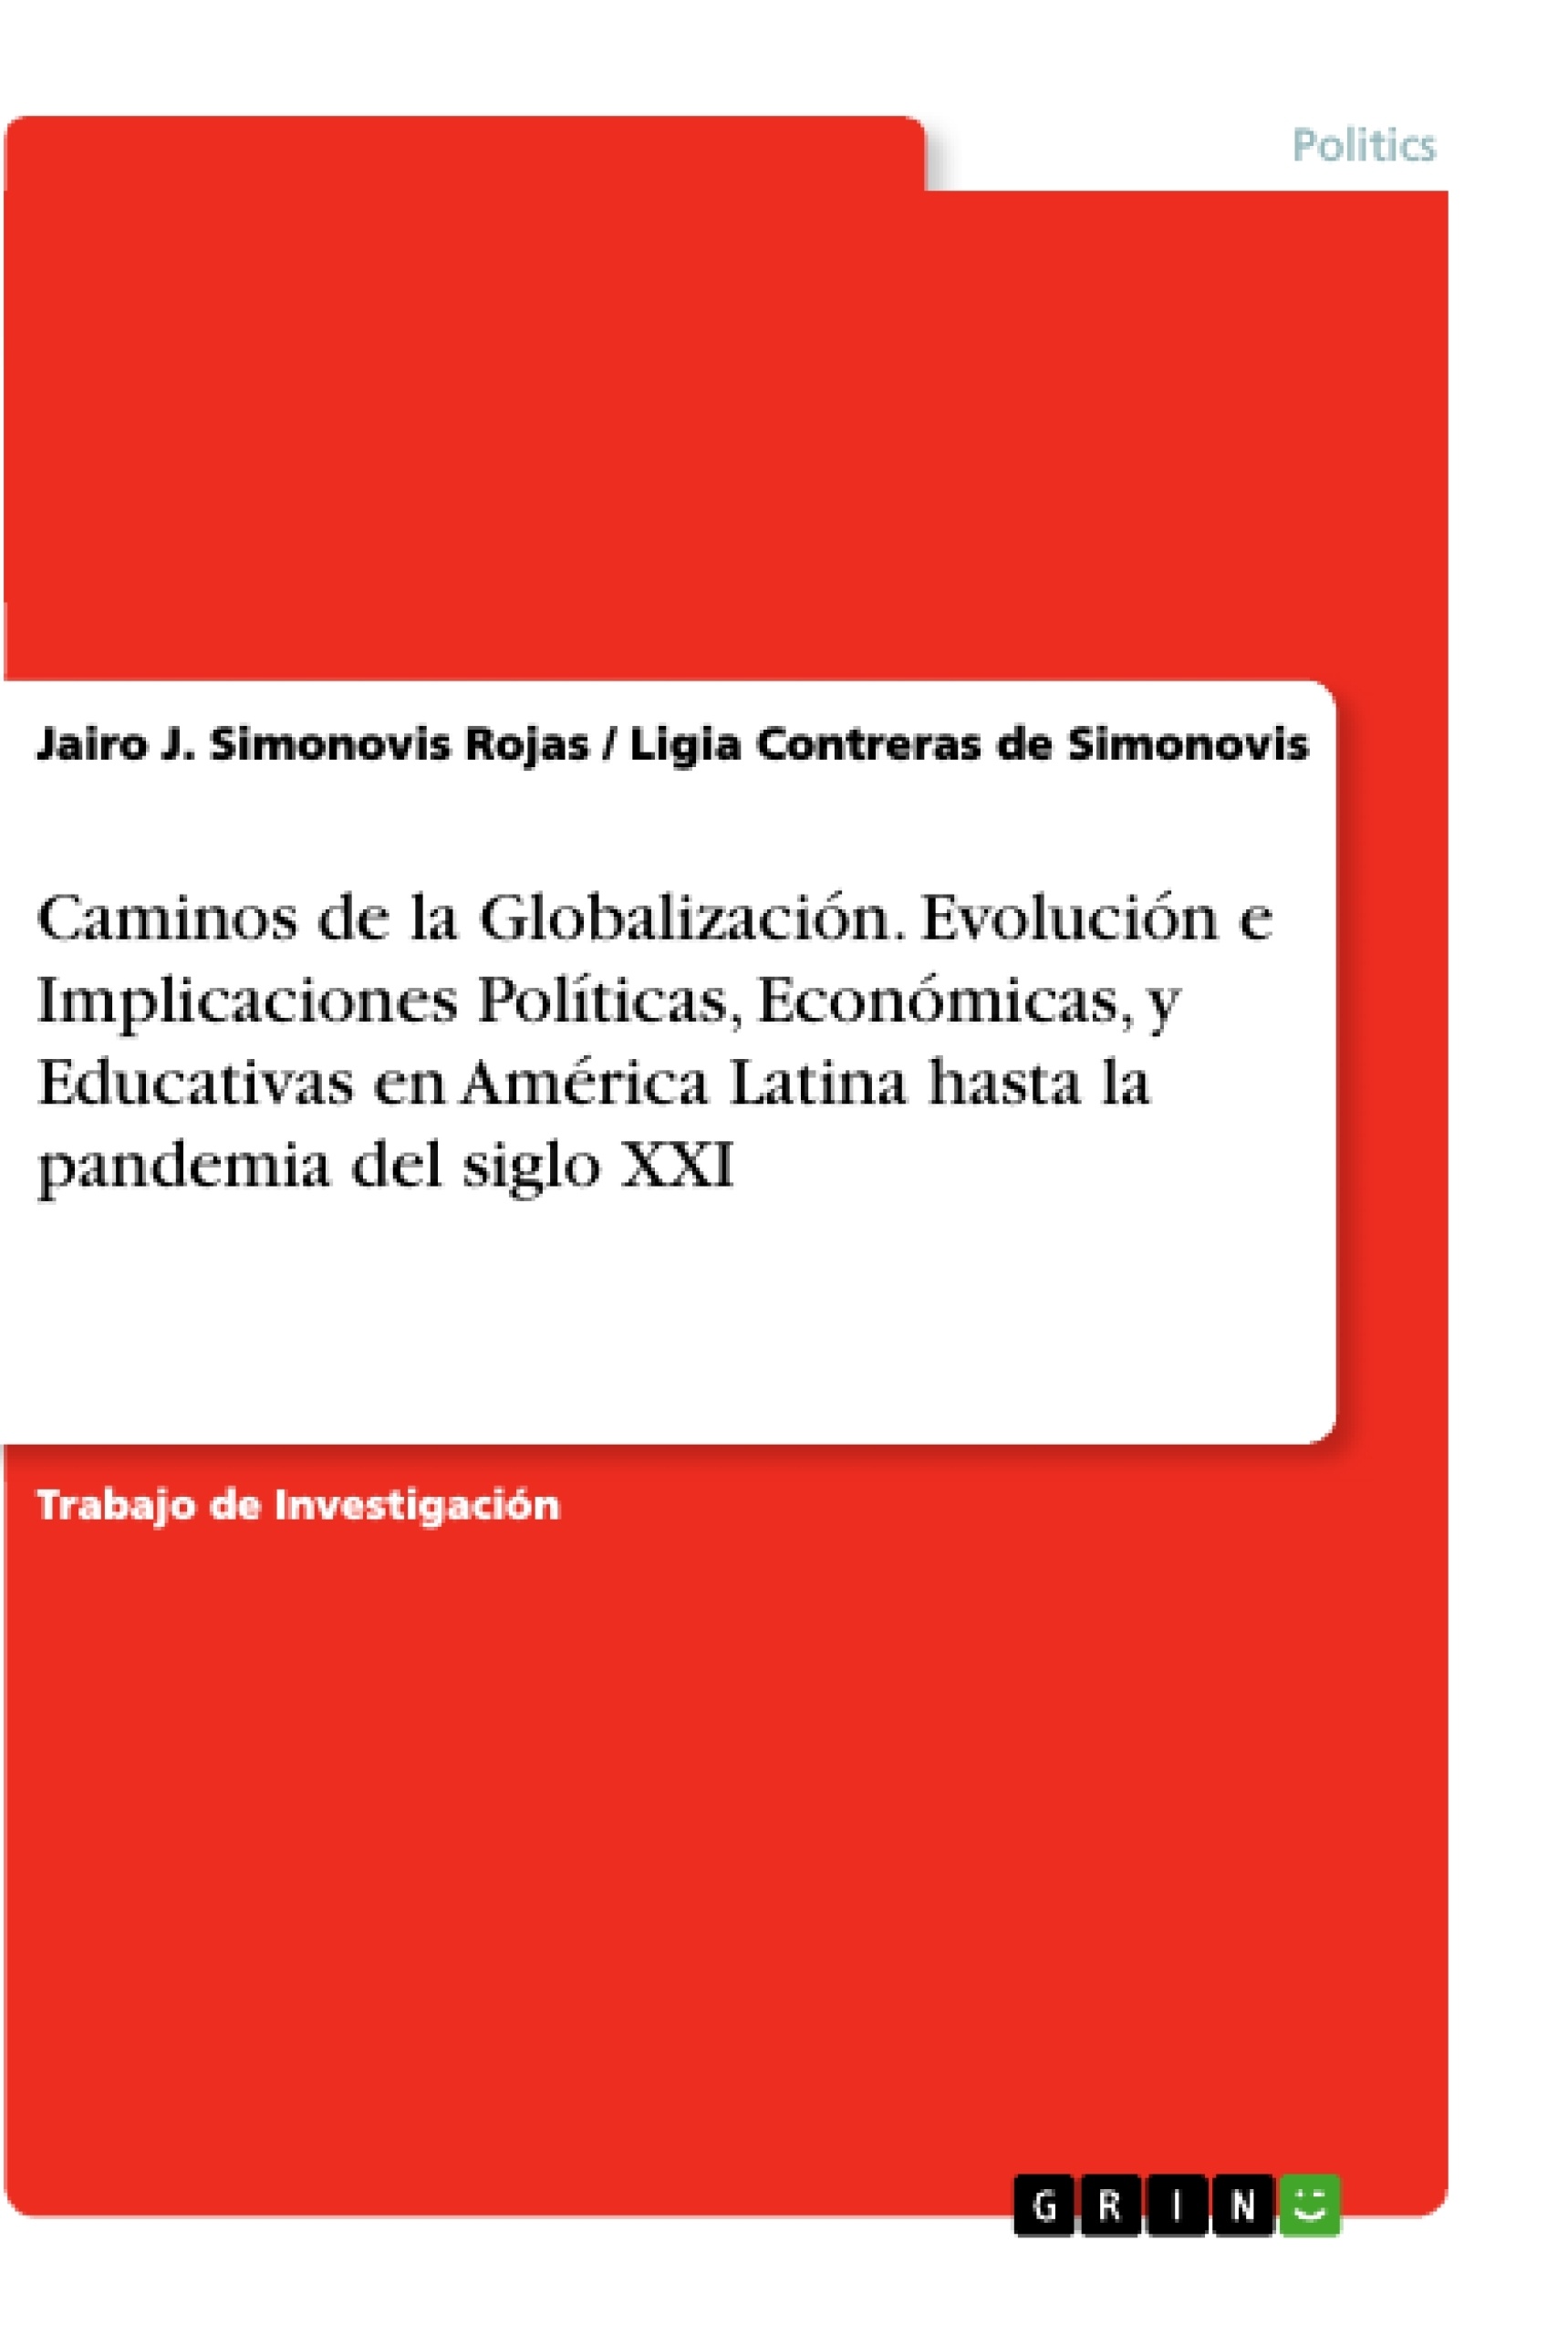 Titre: Caminos de la Globalización. Evolución e Implicaciones Políticas, Económicas, y Educativas en América Latina hasta la pandemia del siglo XXI